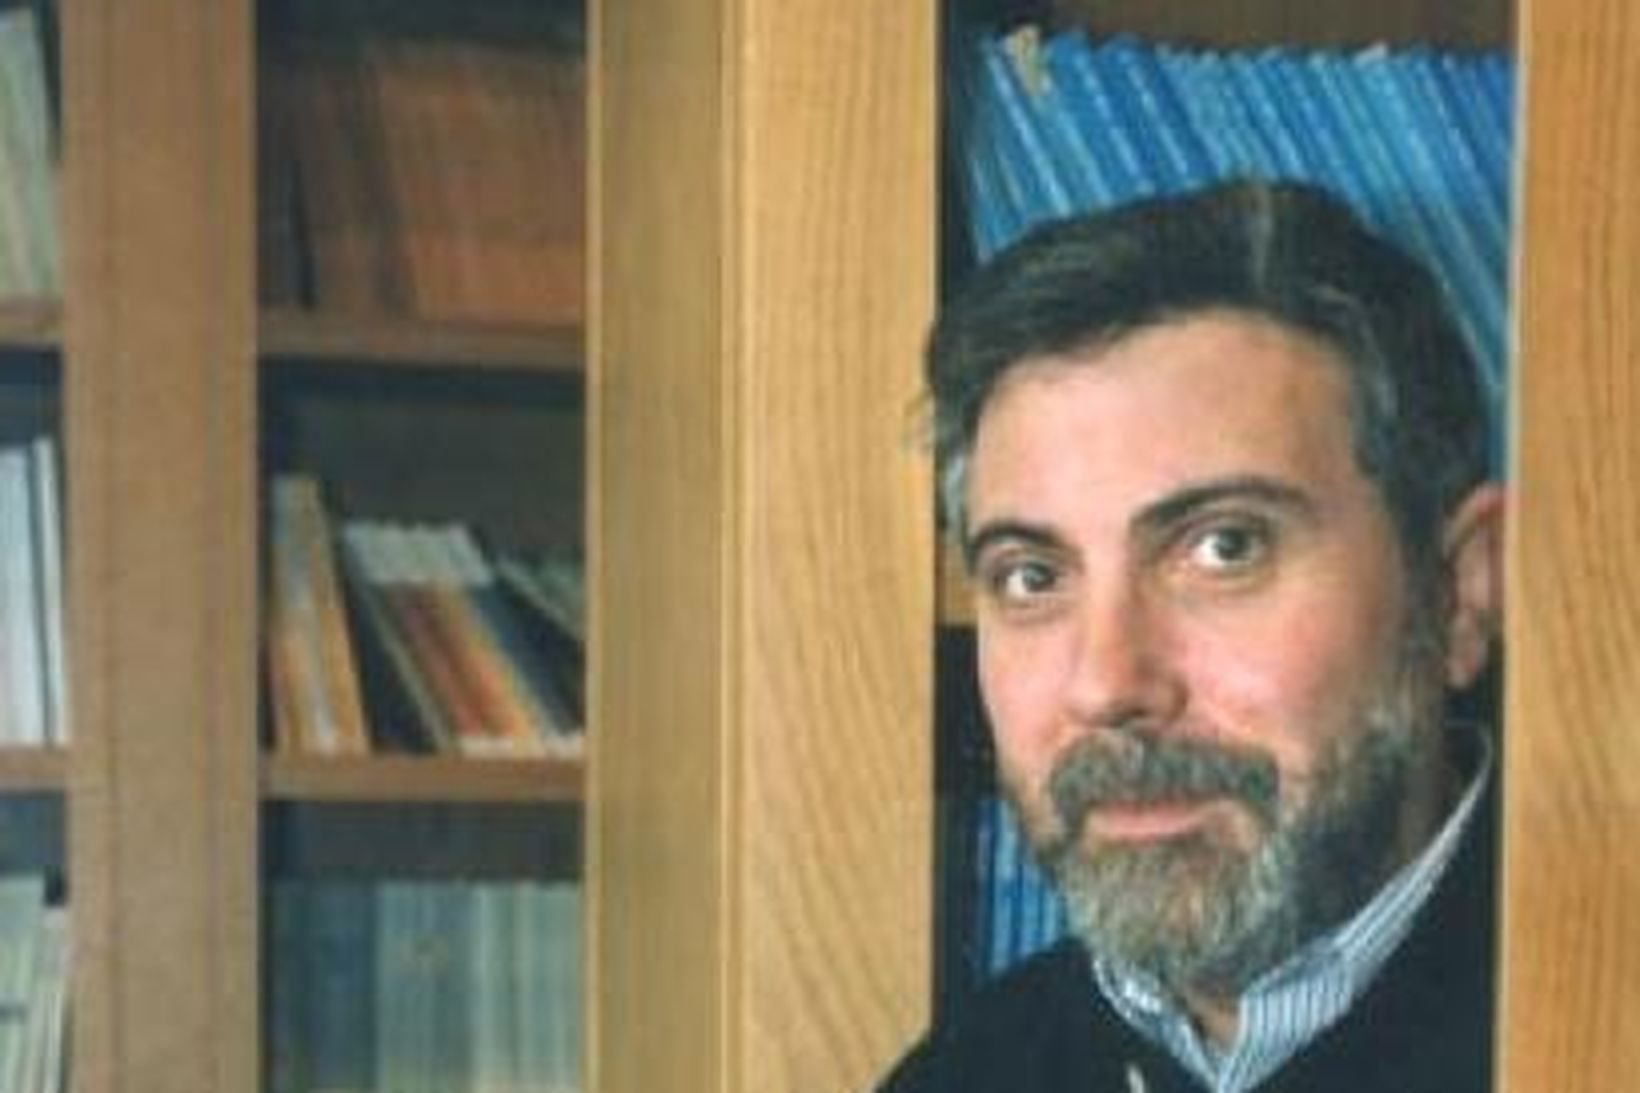 Paul Krugman sem fékk Nóbelsverðlaunin í hagfræði í dag og …